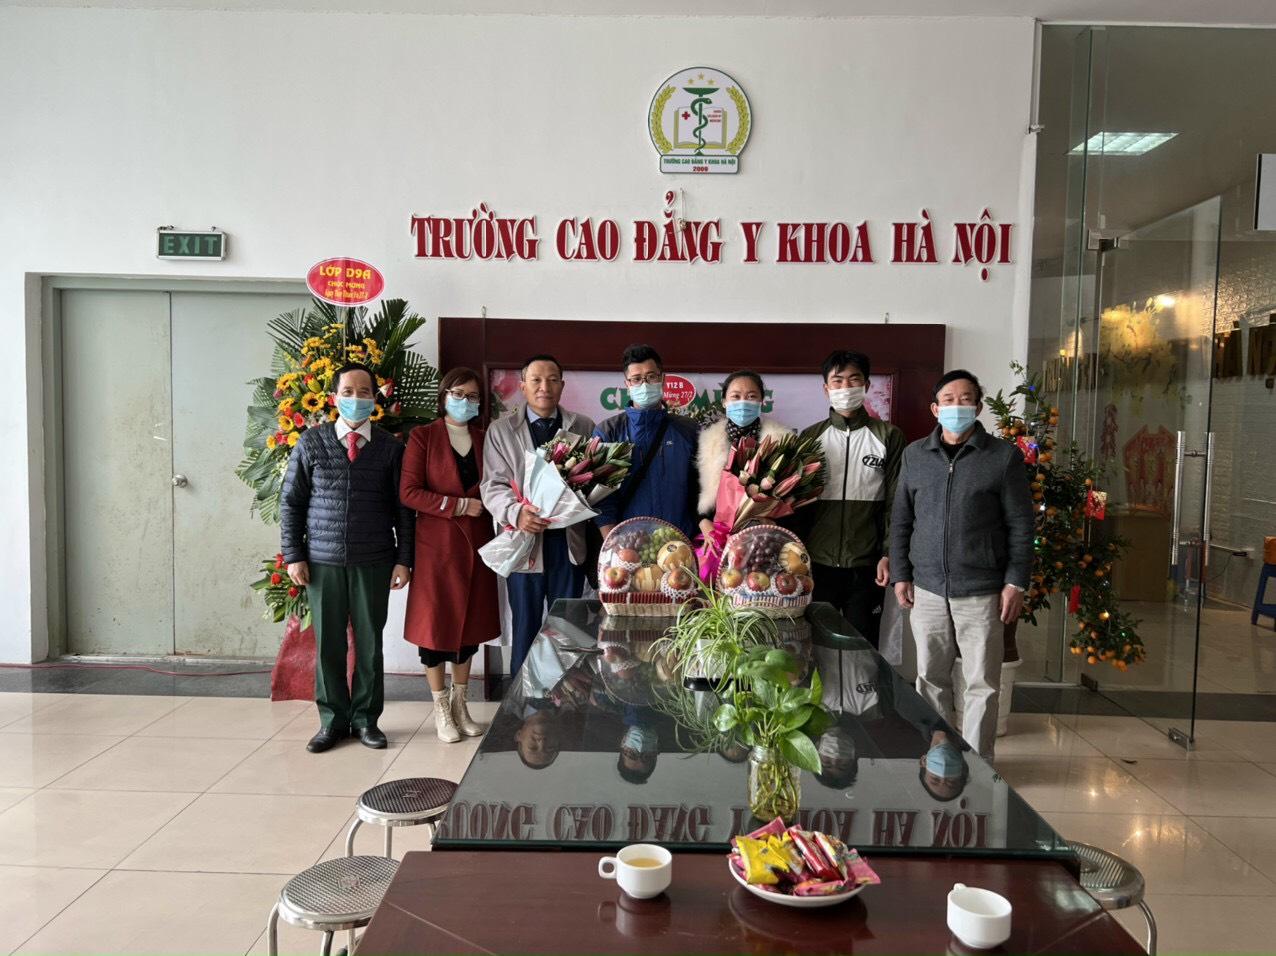 Trường Cao đẳng Y Khoa Hà Nội chúc mừng ngày Thầy thuốc Việt Nam 27-02